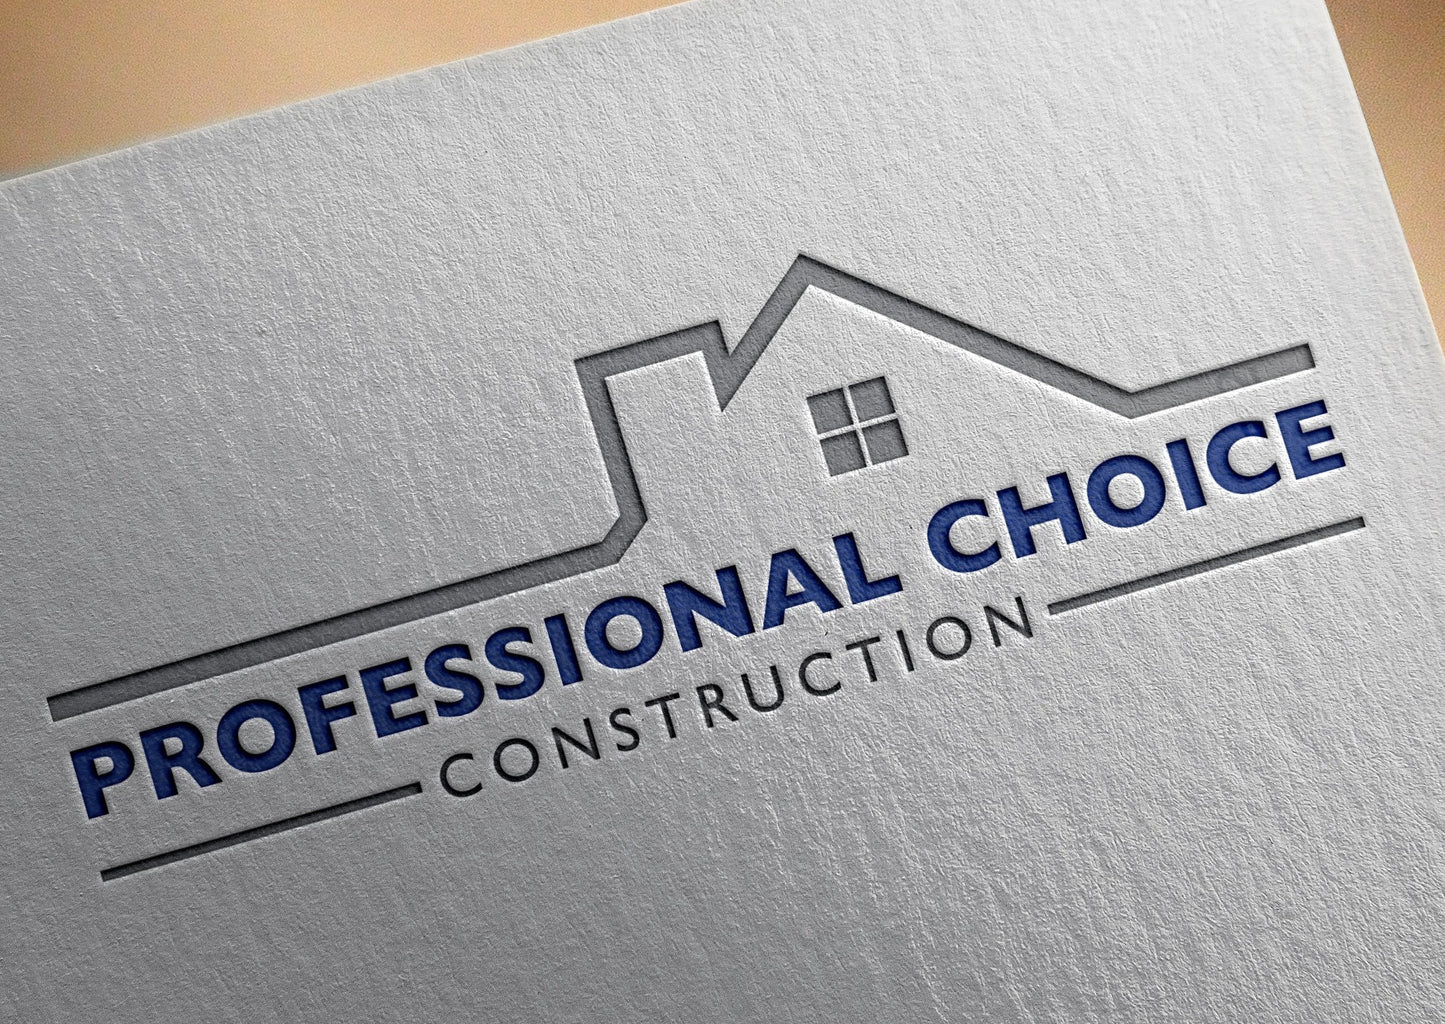 Logotipo de construcción | Logotipo de bienes raíces | Diseño de logotipos | Negocio Inmobiliario | Empresa Constructora | Logotipo para techos | Techadores | Agente de bienes raíces